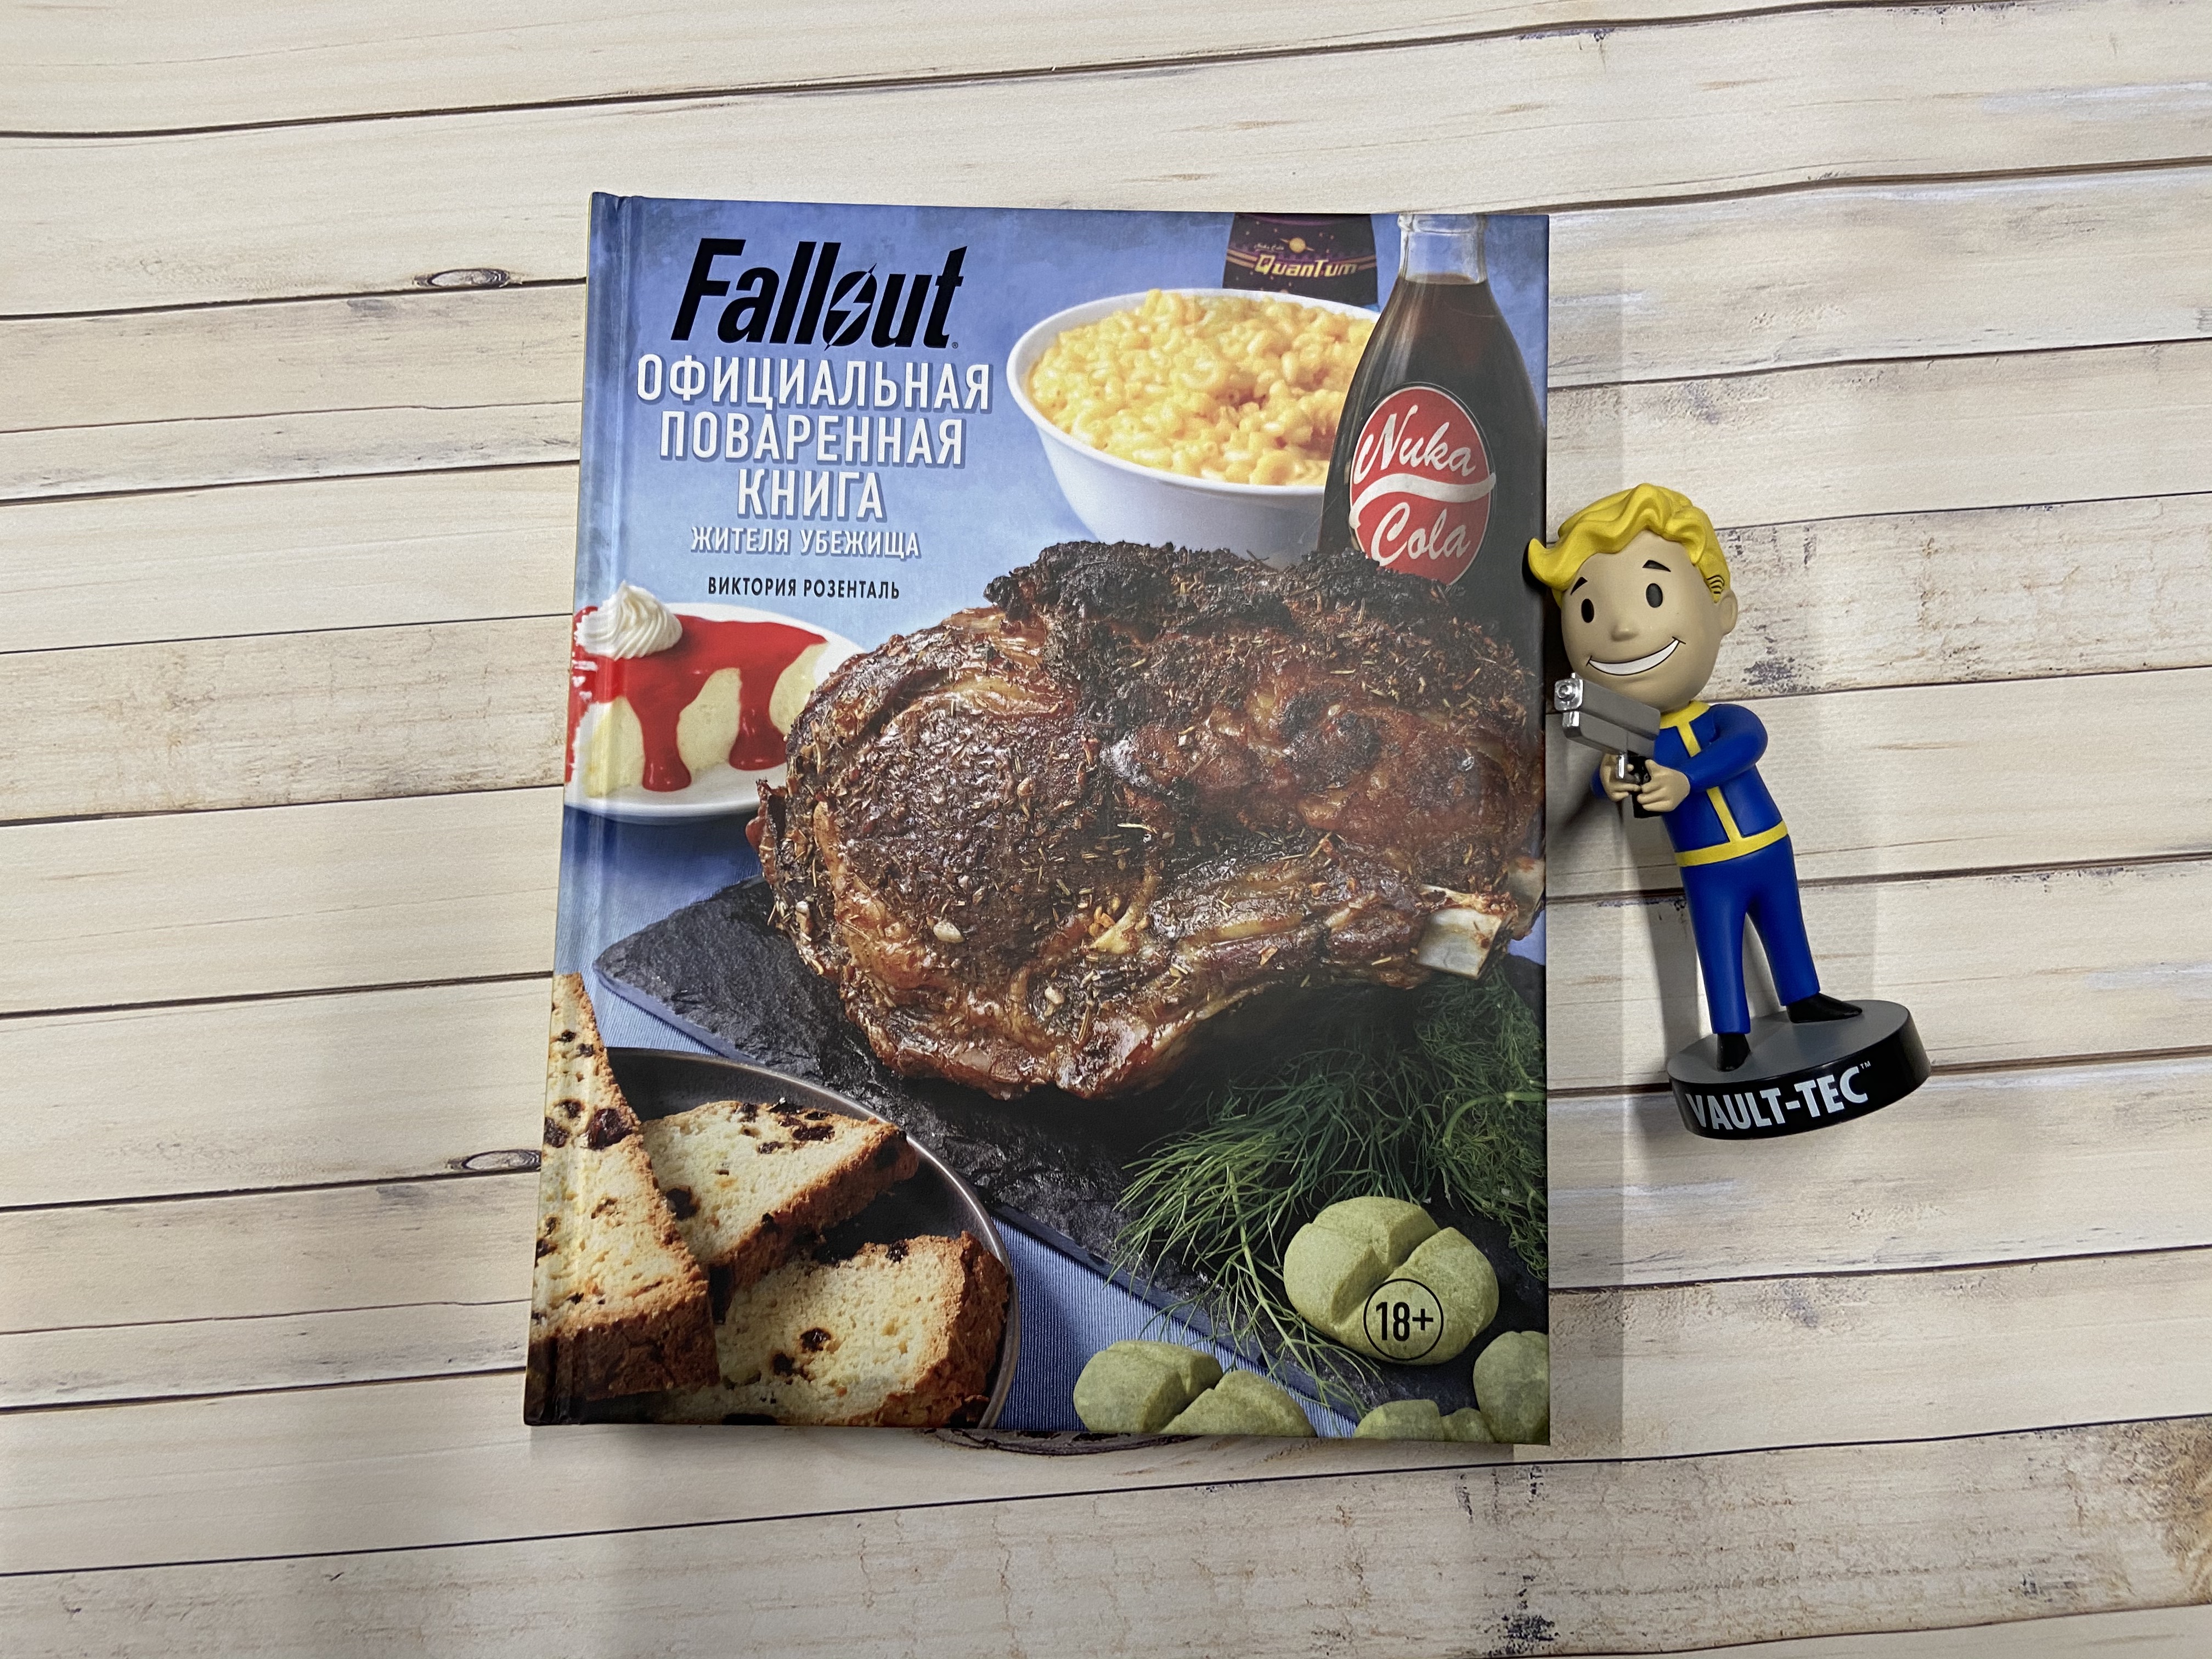 Fallout 4 еда и напитки фото 37